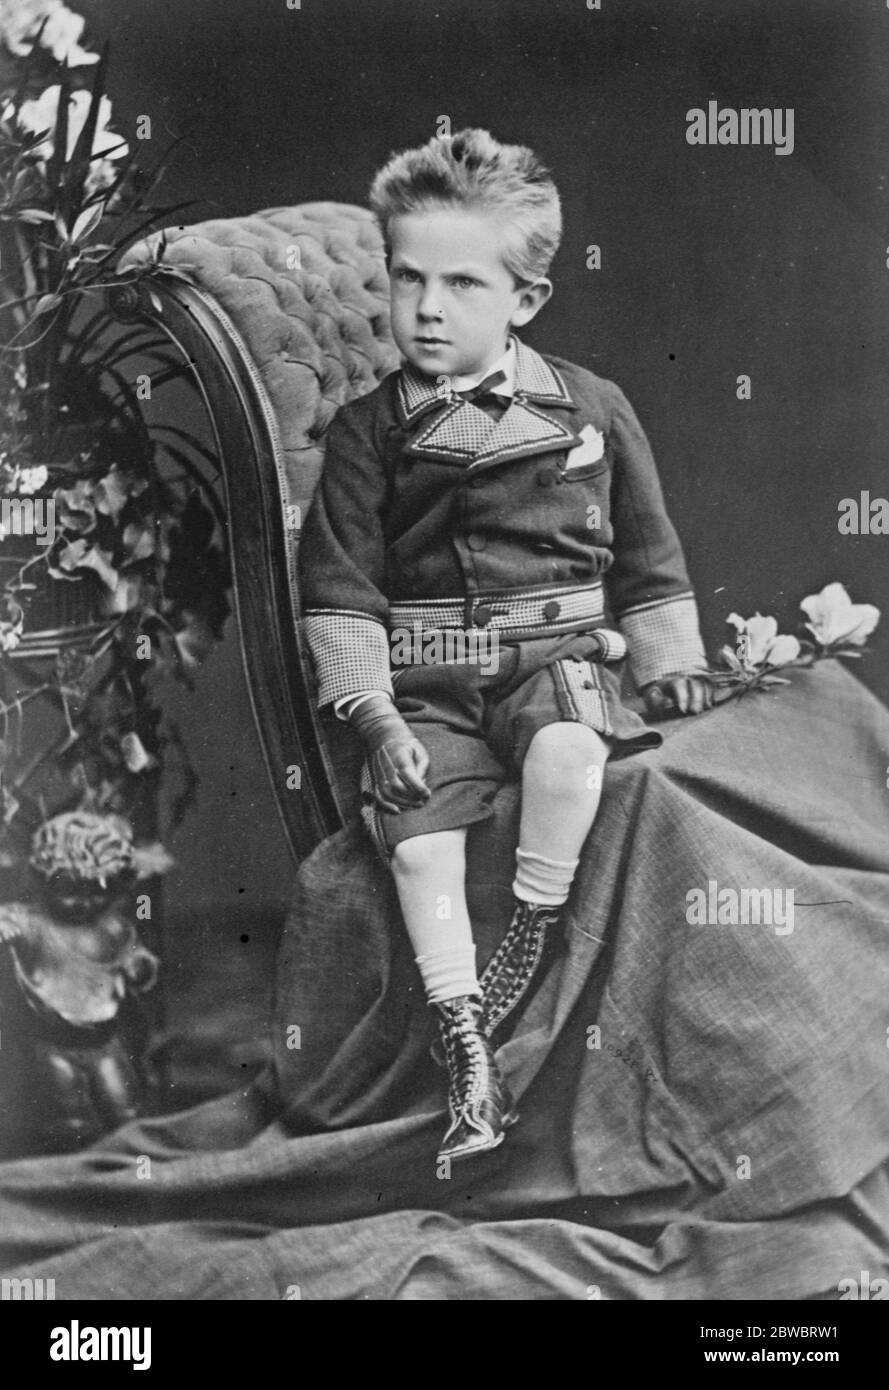 König von Italien, um 25. Jahrestag seiner Aufnahme zu feiern, photogaphed hier bei einem jungen Prinzen. Juni 1925 Stockfoto